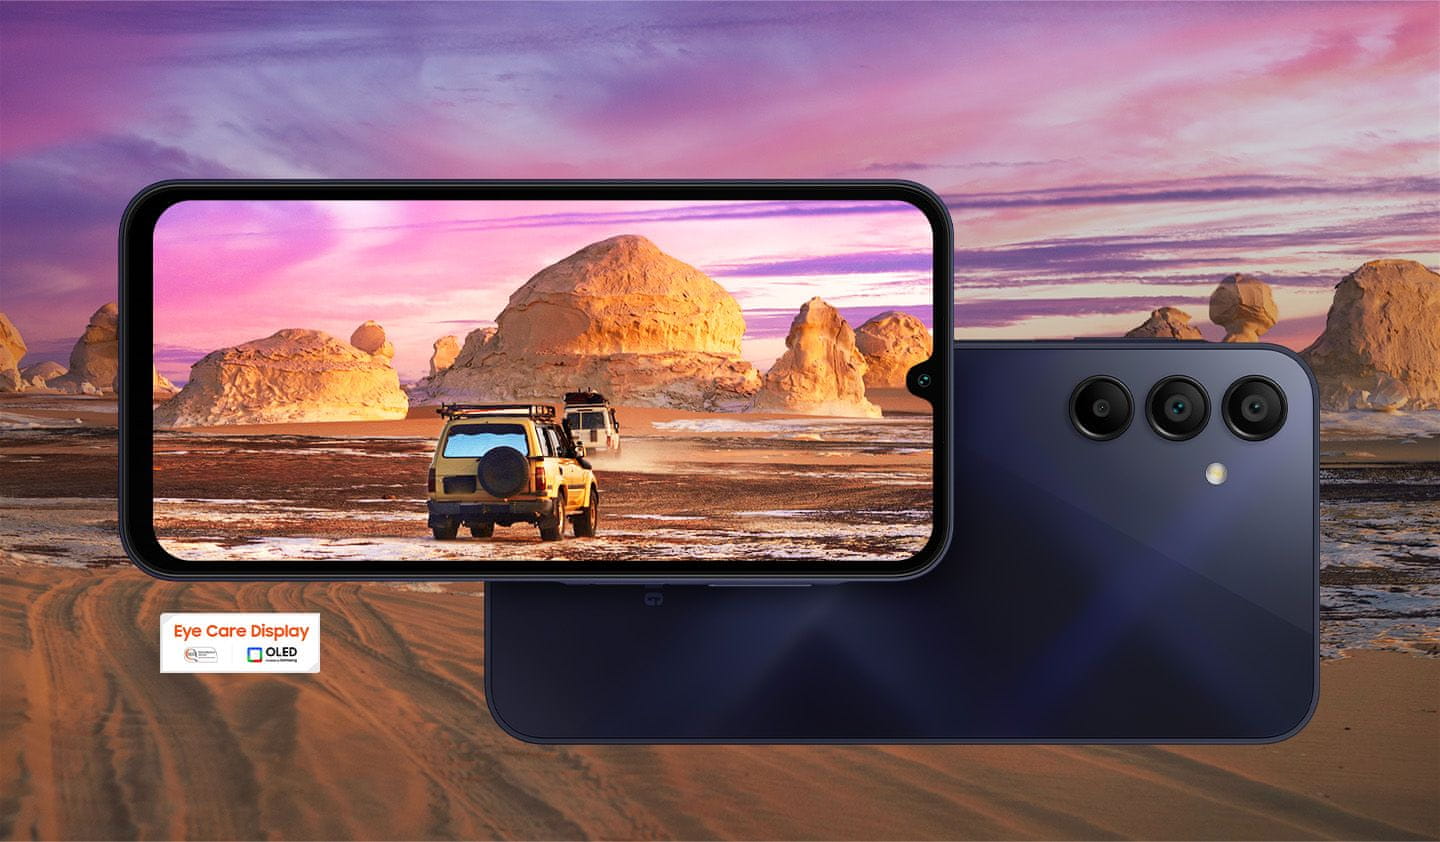 Samsung Galaxy A15 LTE, inteligentný telefón 6,5 palcový displej Super AMOLED obnovovacia frekvencia stabilizácia obrazu tri fotoaparáty najrýchlejšie LTE pripojenie výkonný inteligentný telefón veľký displej rýchlonabíjanie